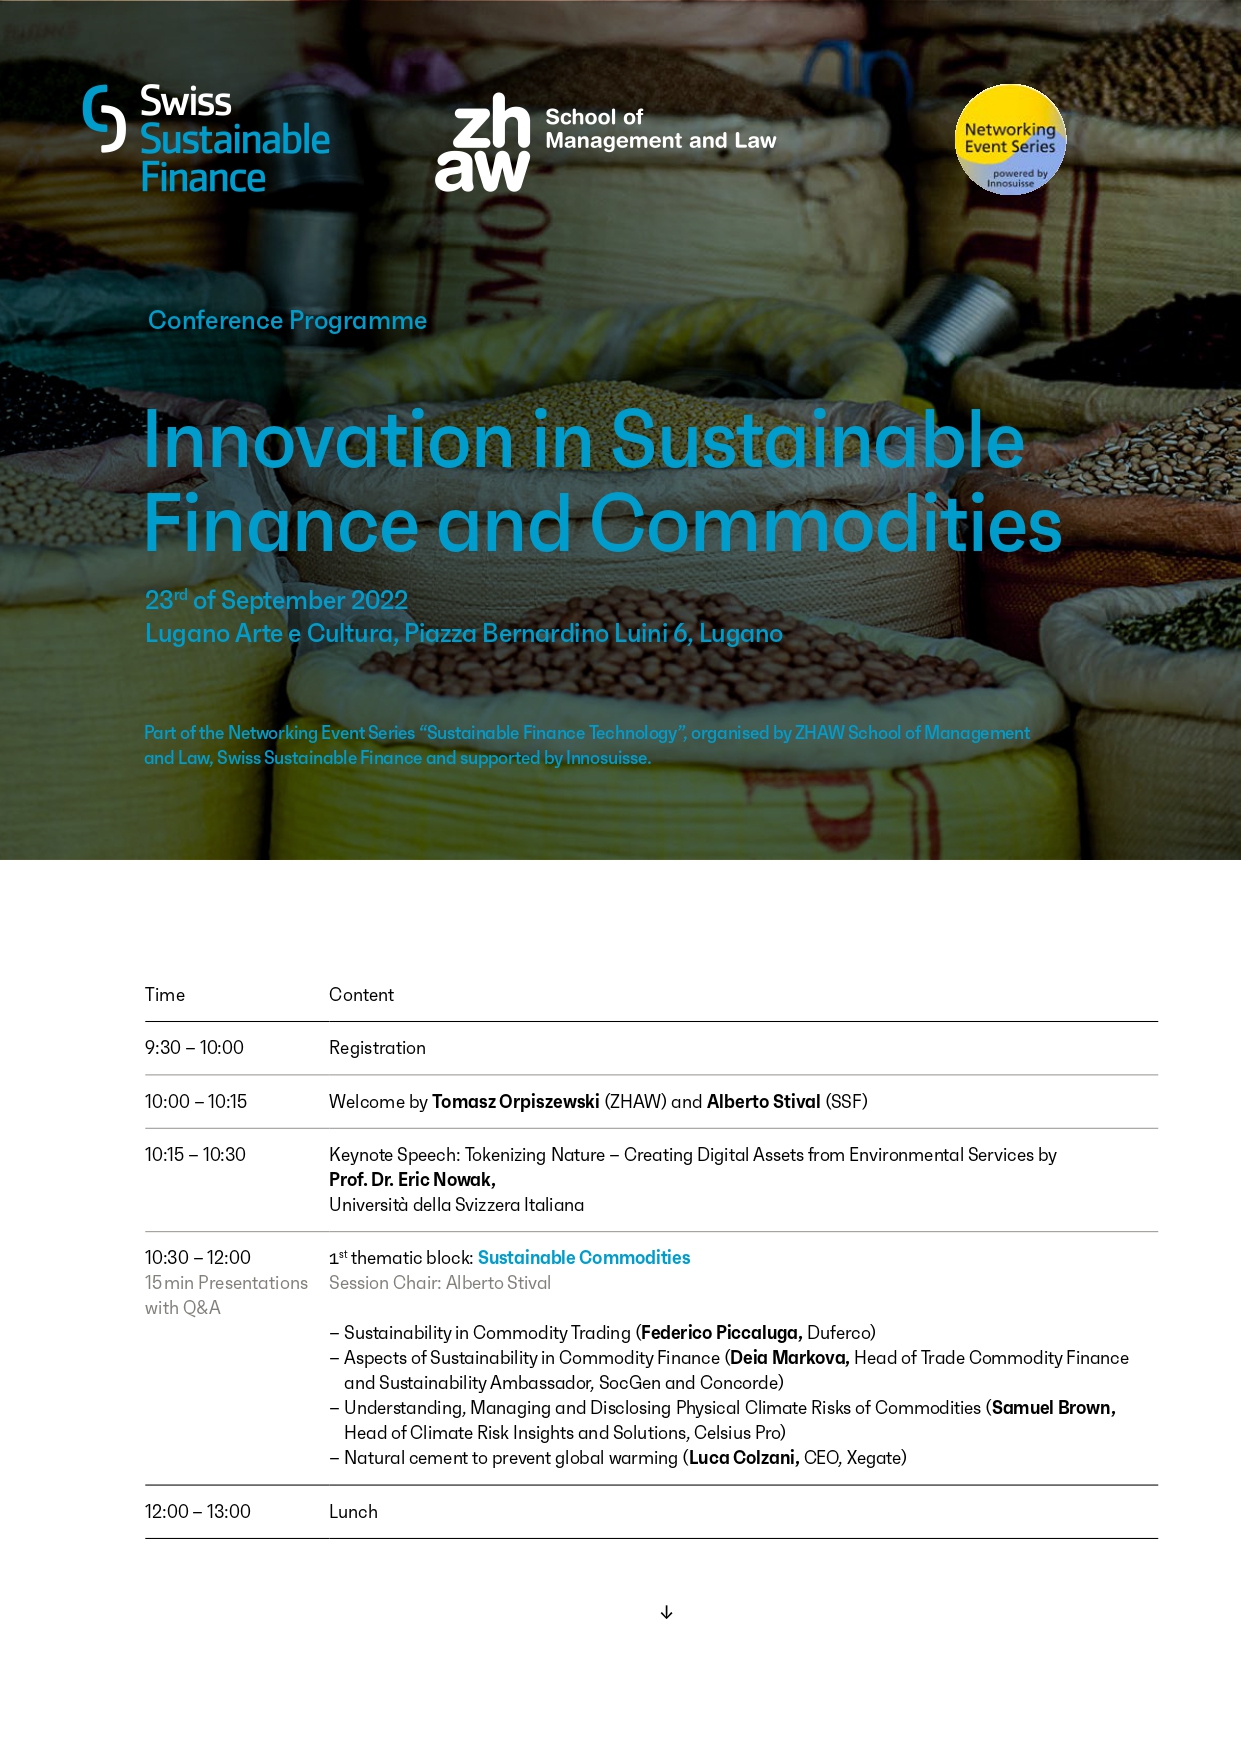 La prima pagina del programma di "Innovation in Sustainable Finance and Commodities" (in lingua inglese)